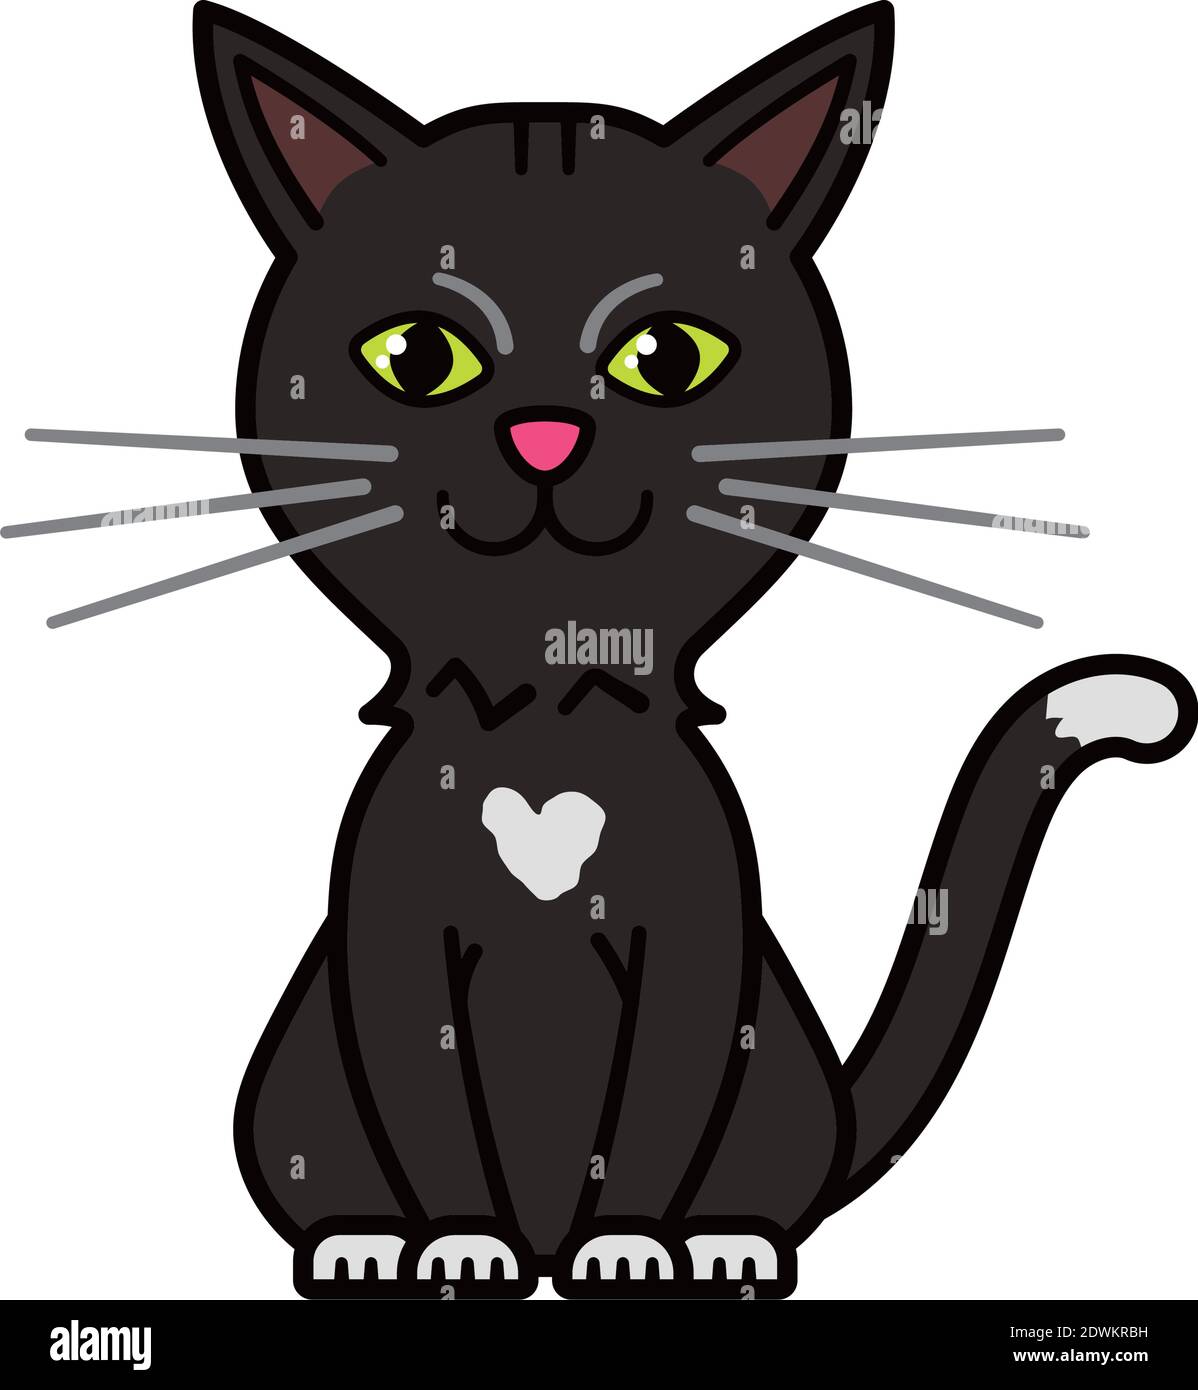 Nette sitzende graue Katze Charakter Vektor Illustration Stock Vektor